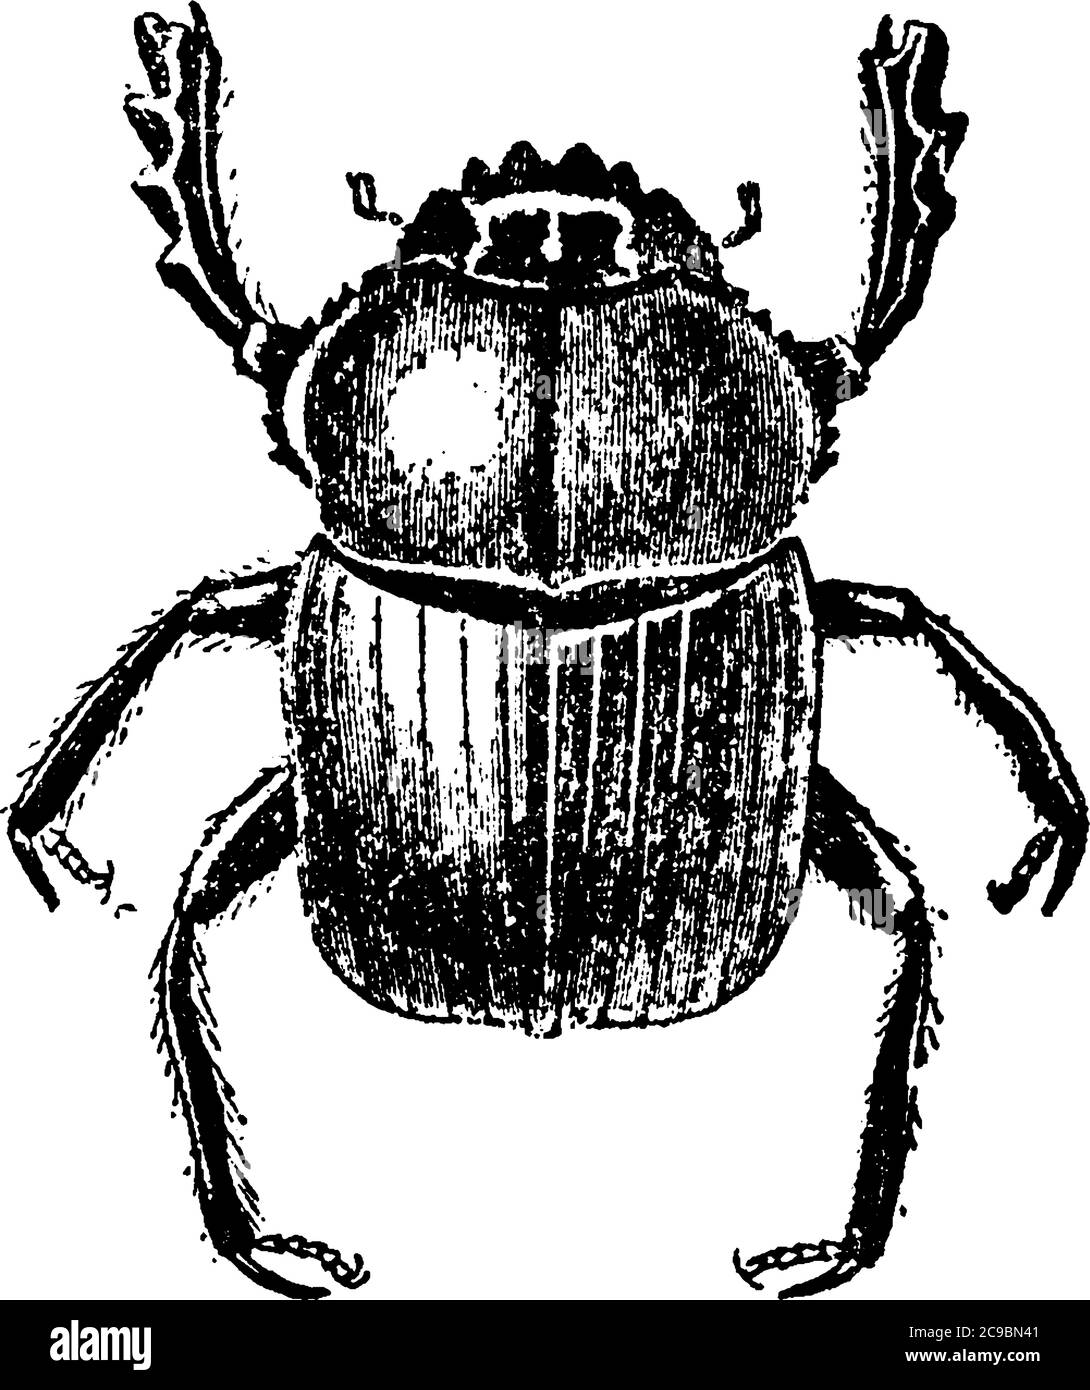 Gli scarabei della famiglia Scarabaeidae, sono scarabei corposi, per la maggior parte di colori metallici brillanti, con marcature a striscia trovate nel loro abdome Illustrazione Vettoriale